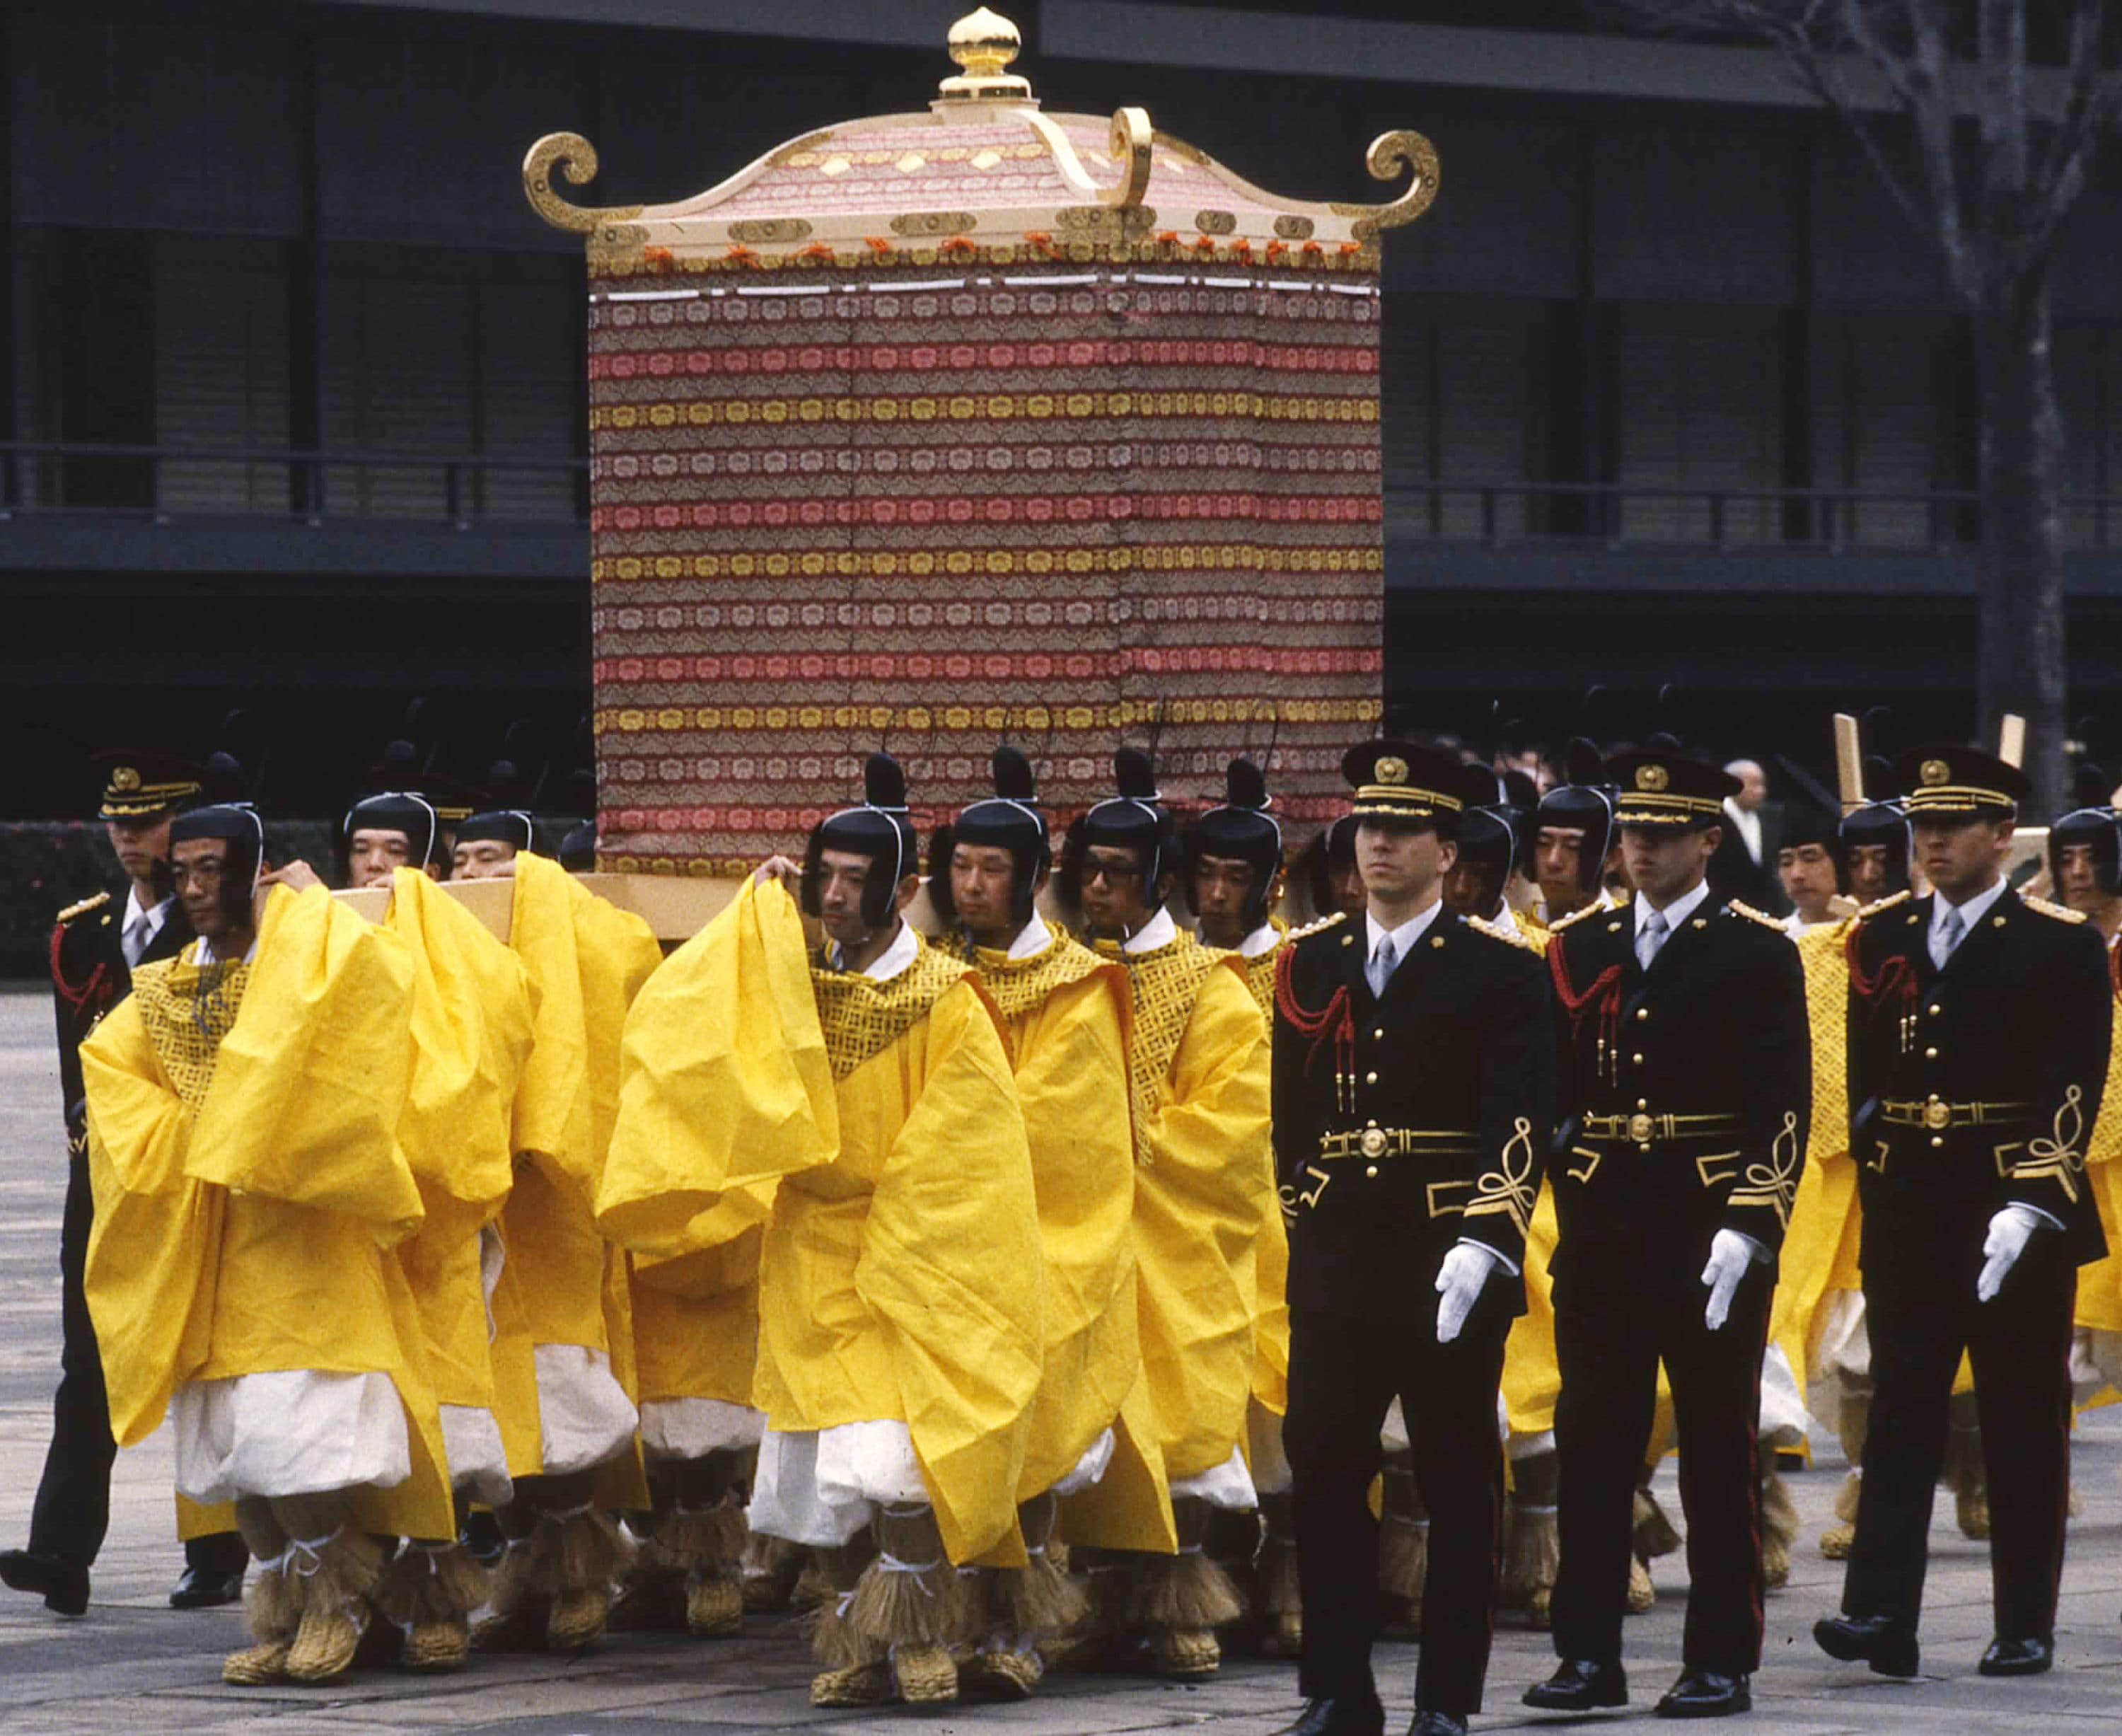 写真で見る日本の国葬、昭和天皇「大喪の礼」の伝統美と国民の弔意の